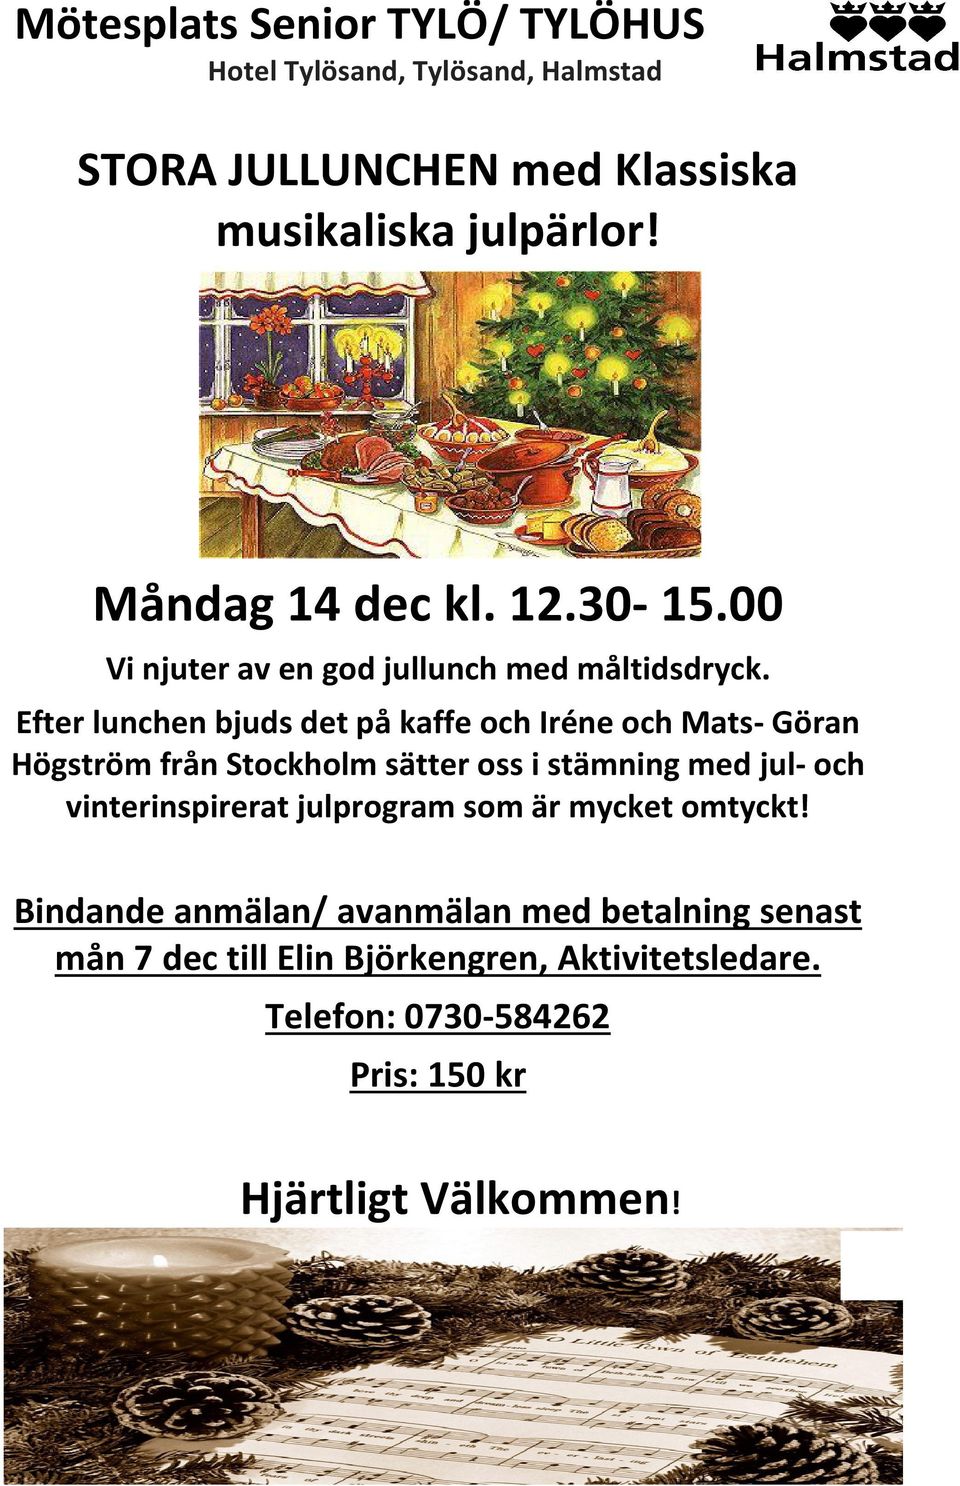 Efter lunchen bjuds det på kaffe och Iréne och Mats- Göran Högström från Stockholm sätter oss i stämning med jul-